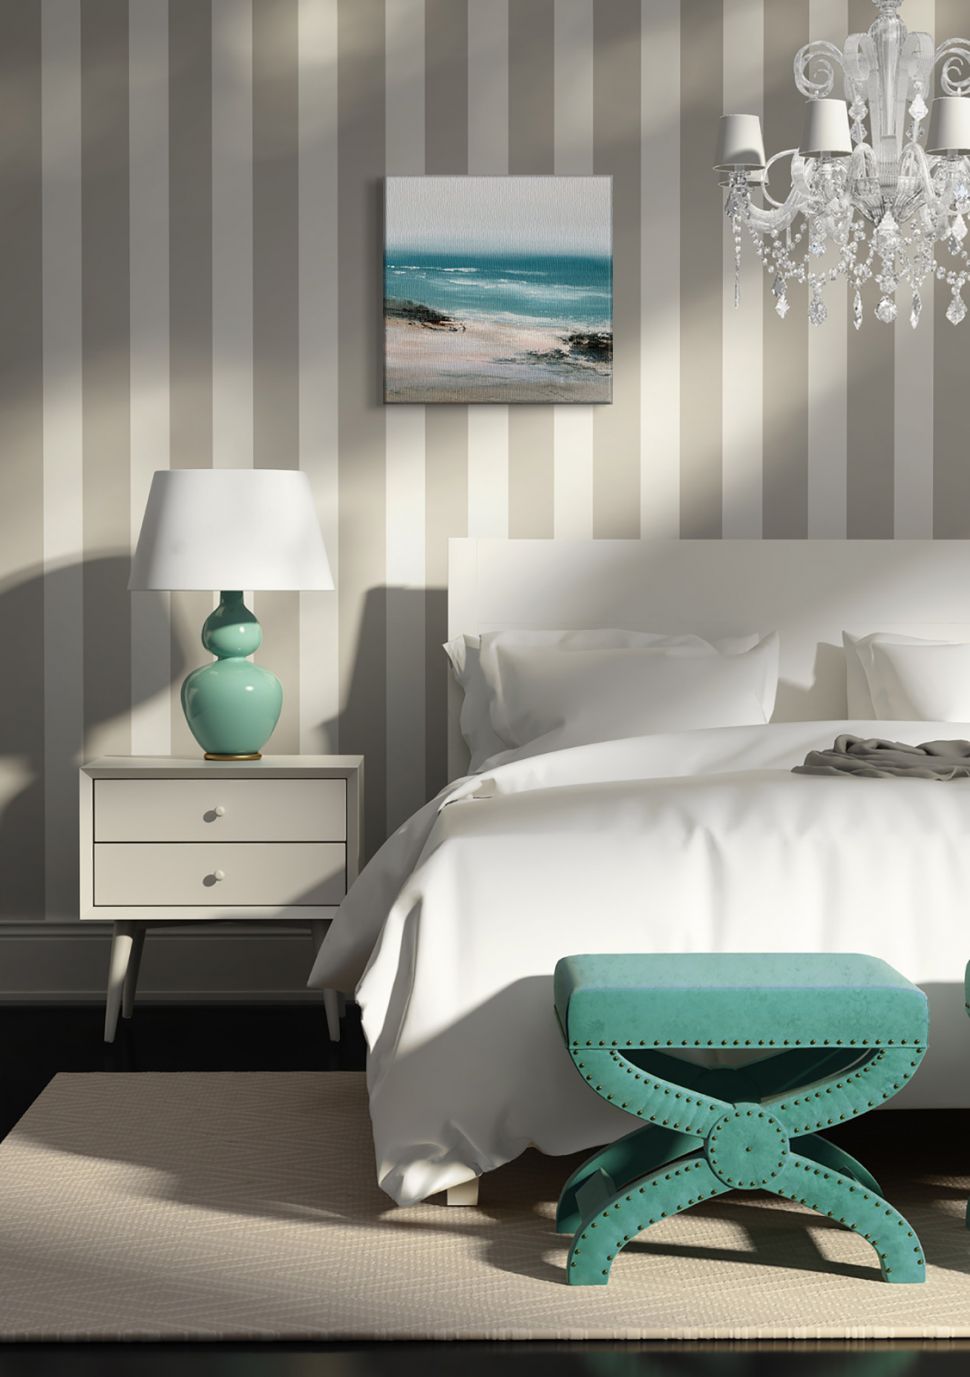 Obraz na płótnie z widokiem oceanu i plaży powieszony w sypialni nad łóżkiem